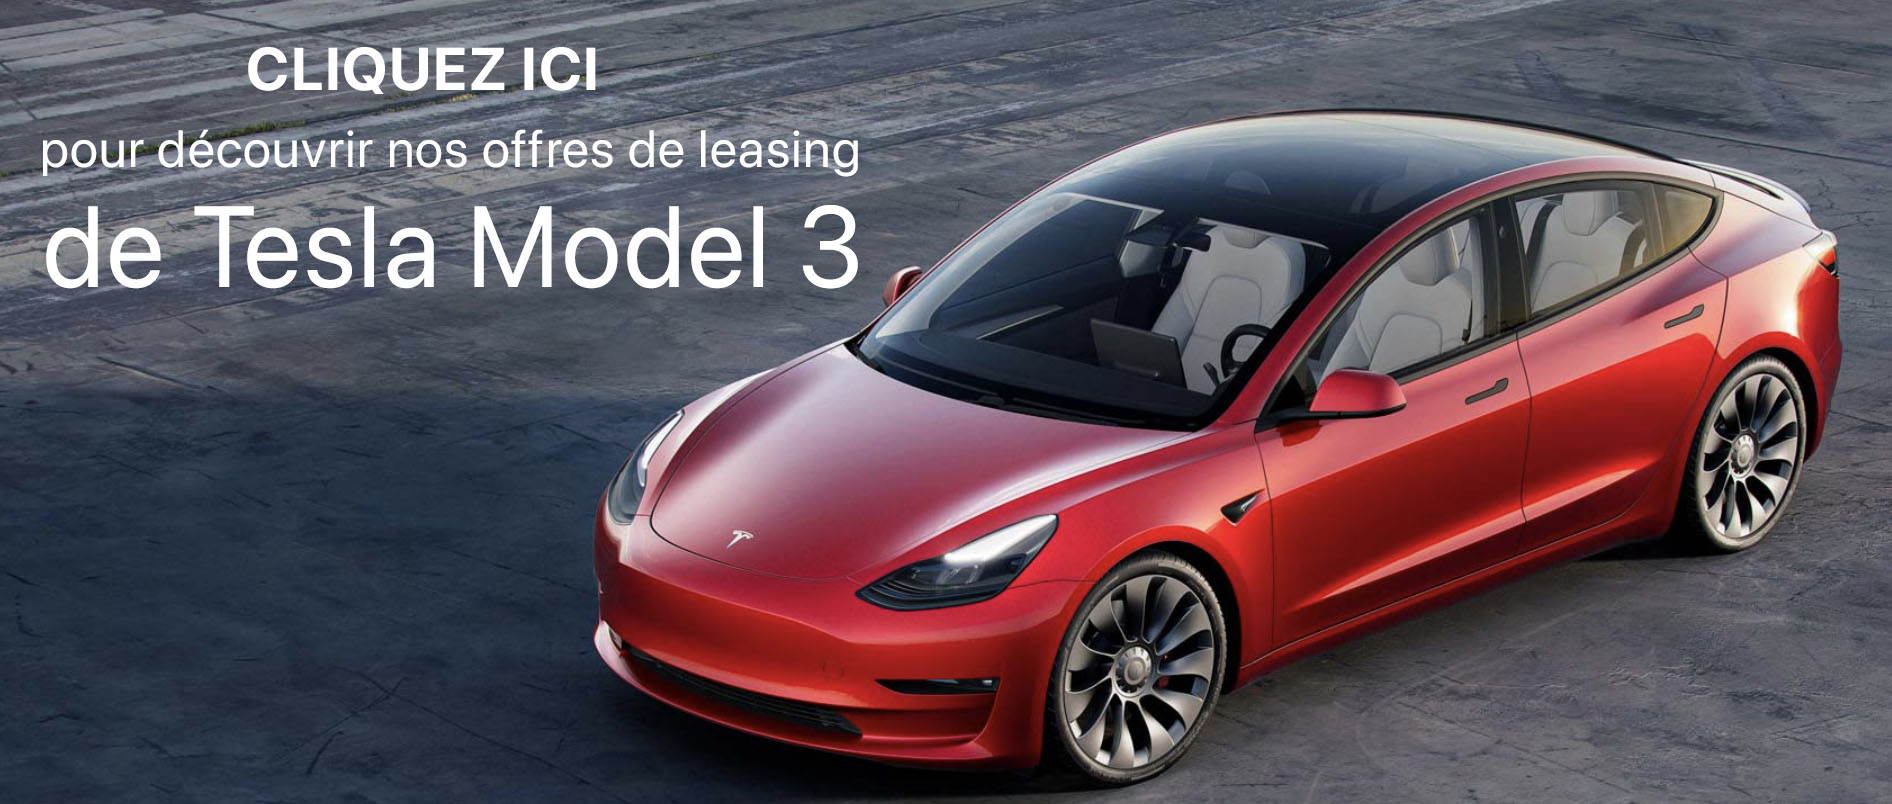 Leasing Tesla Model 3